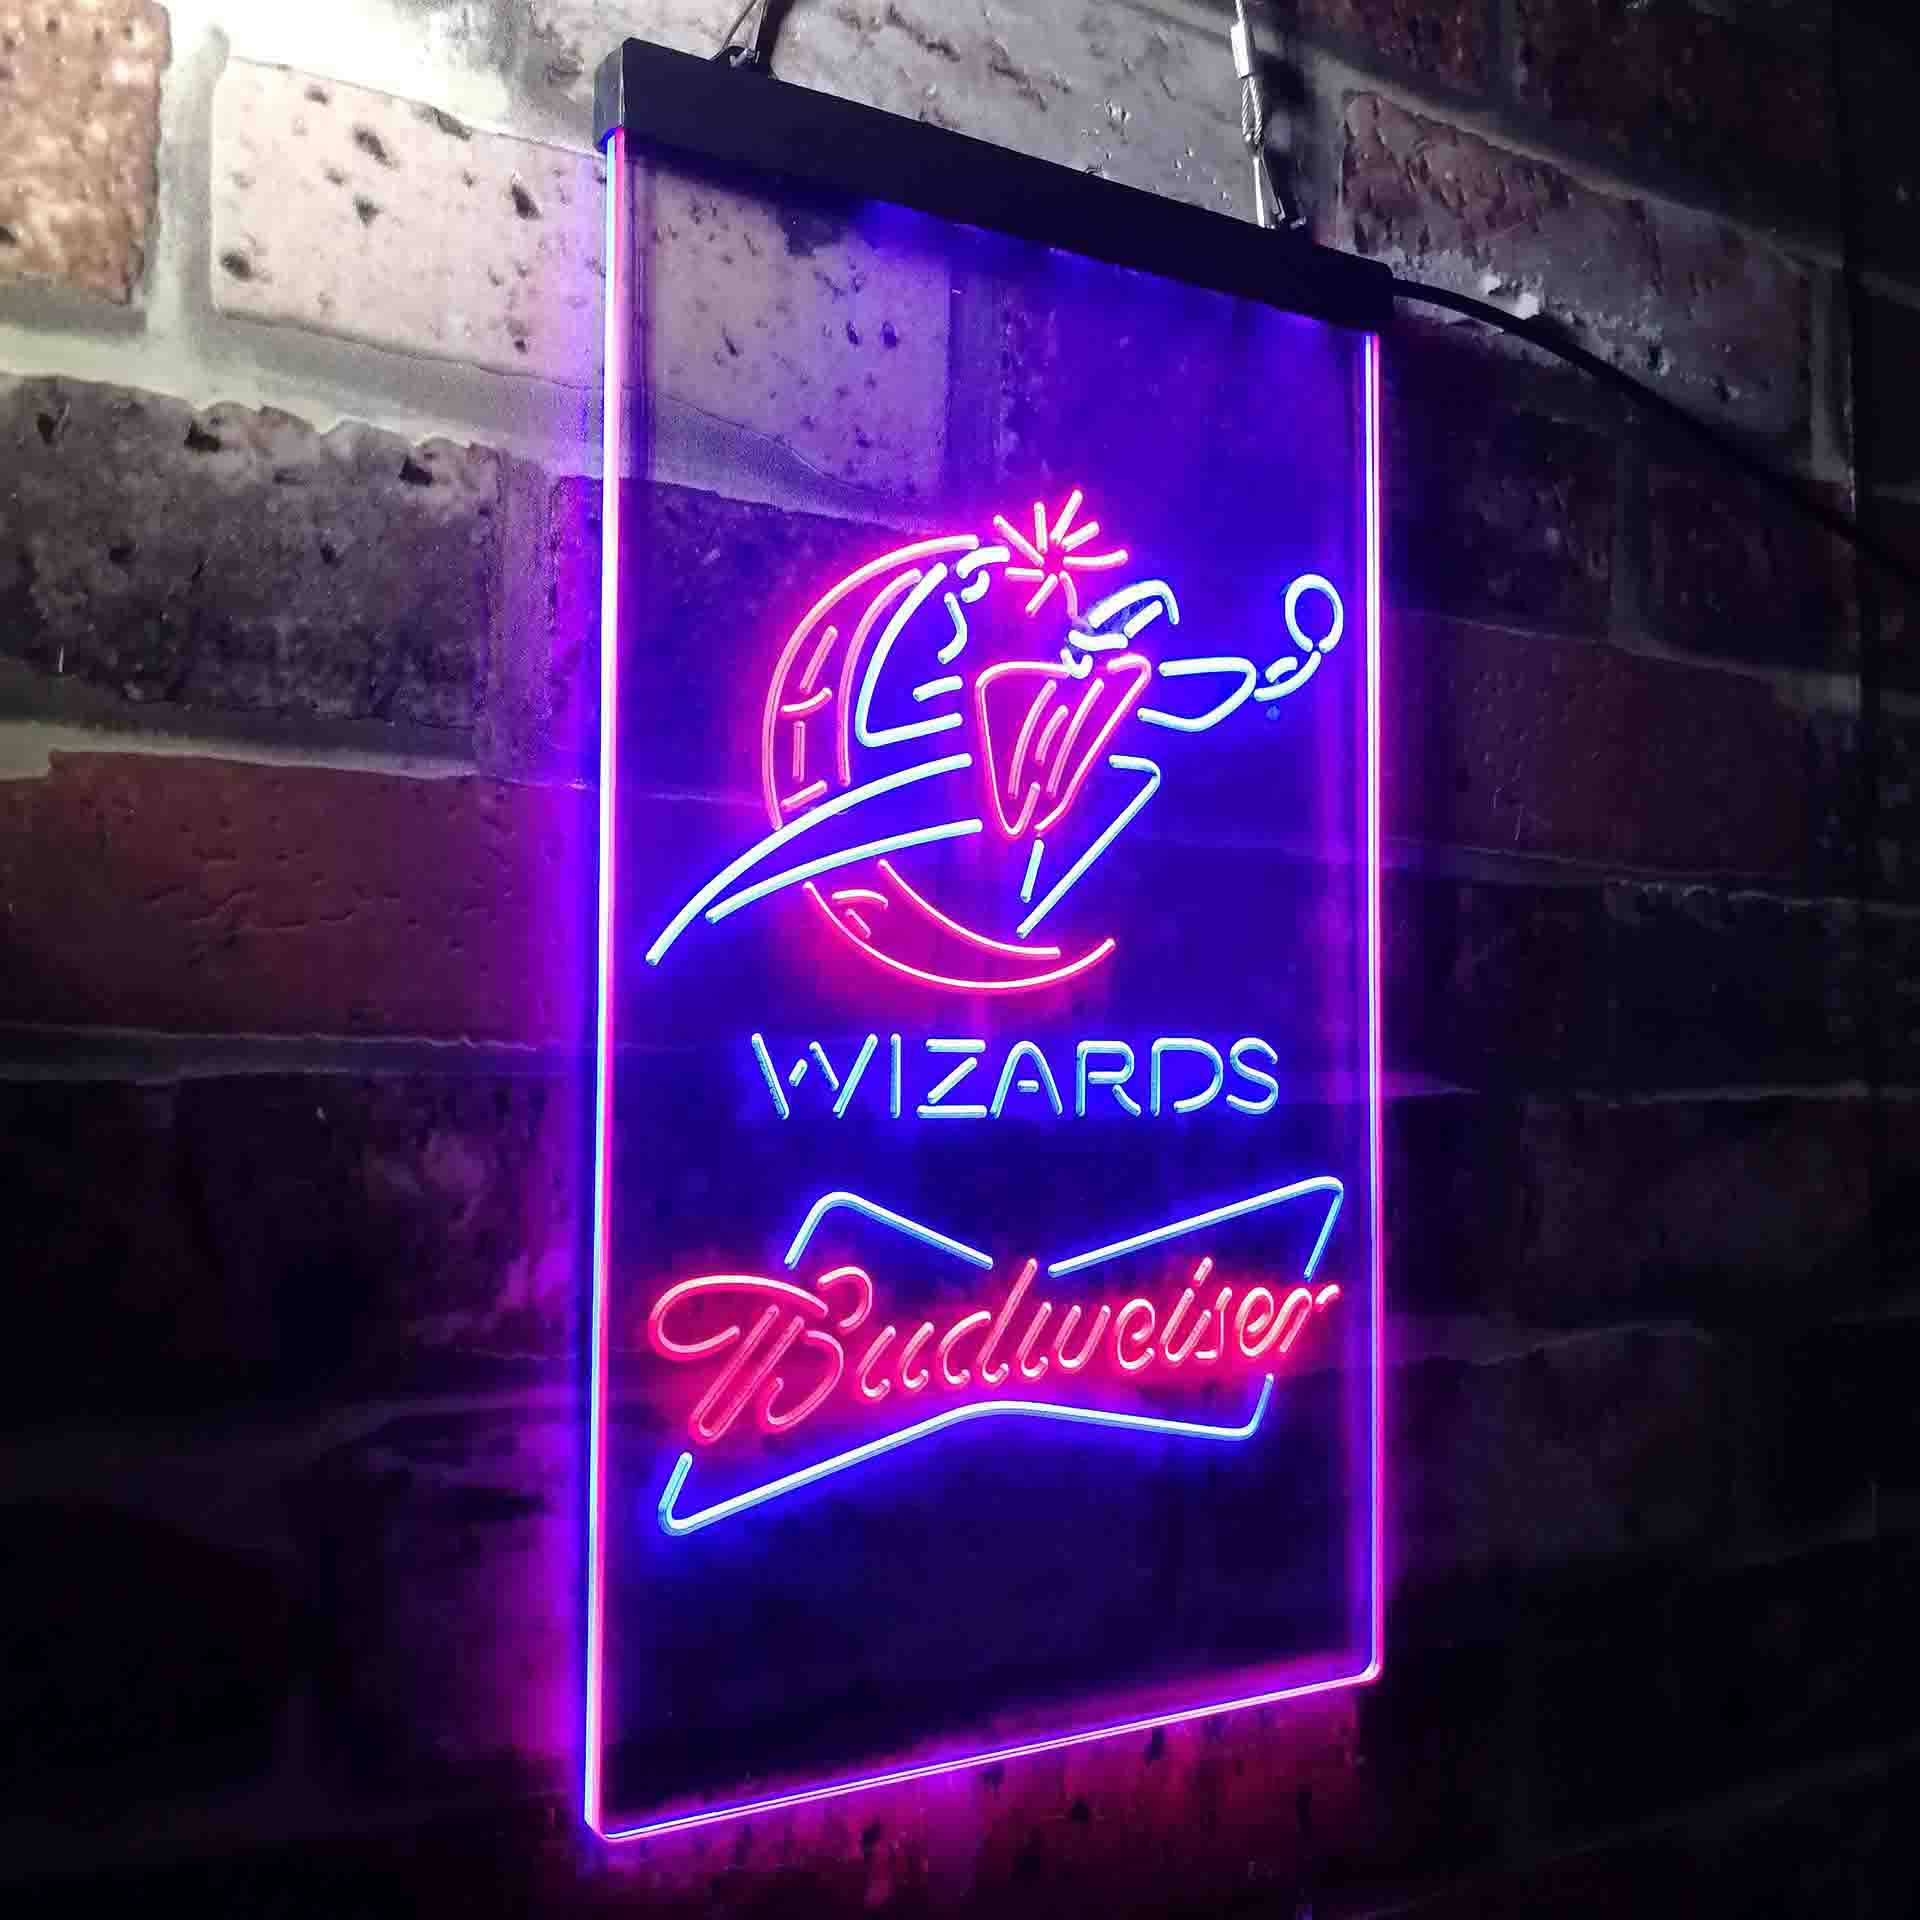 Washington Wizards Budweiser Neon-Like LED Sign